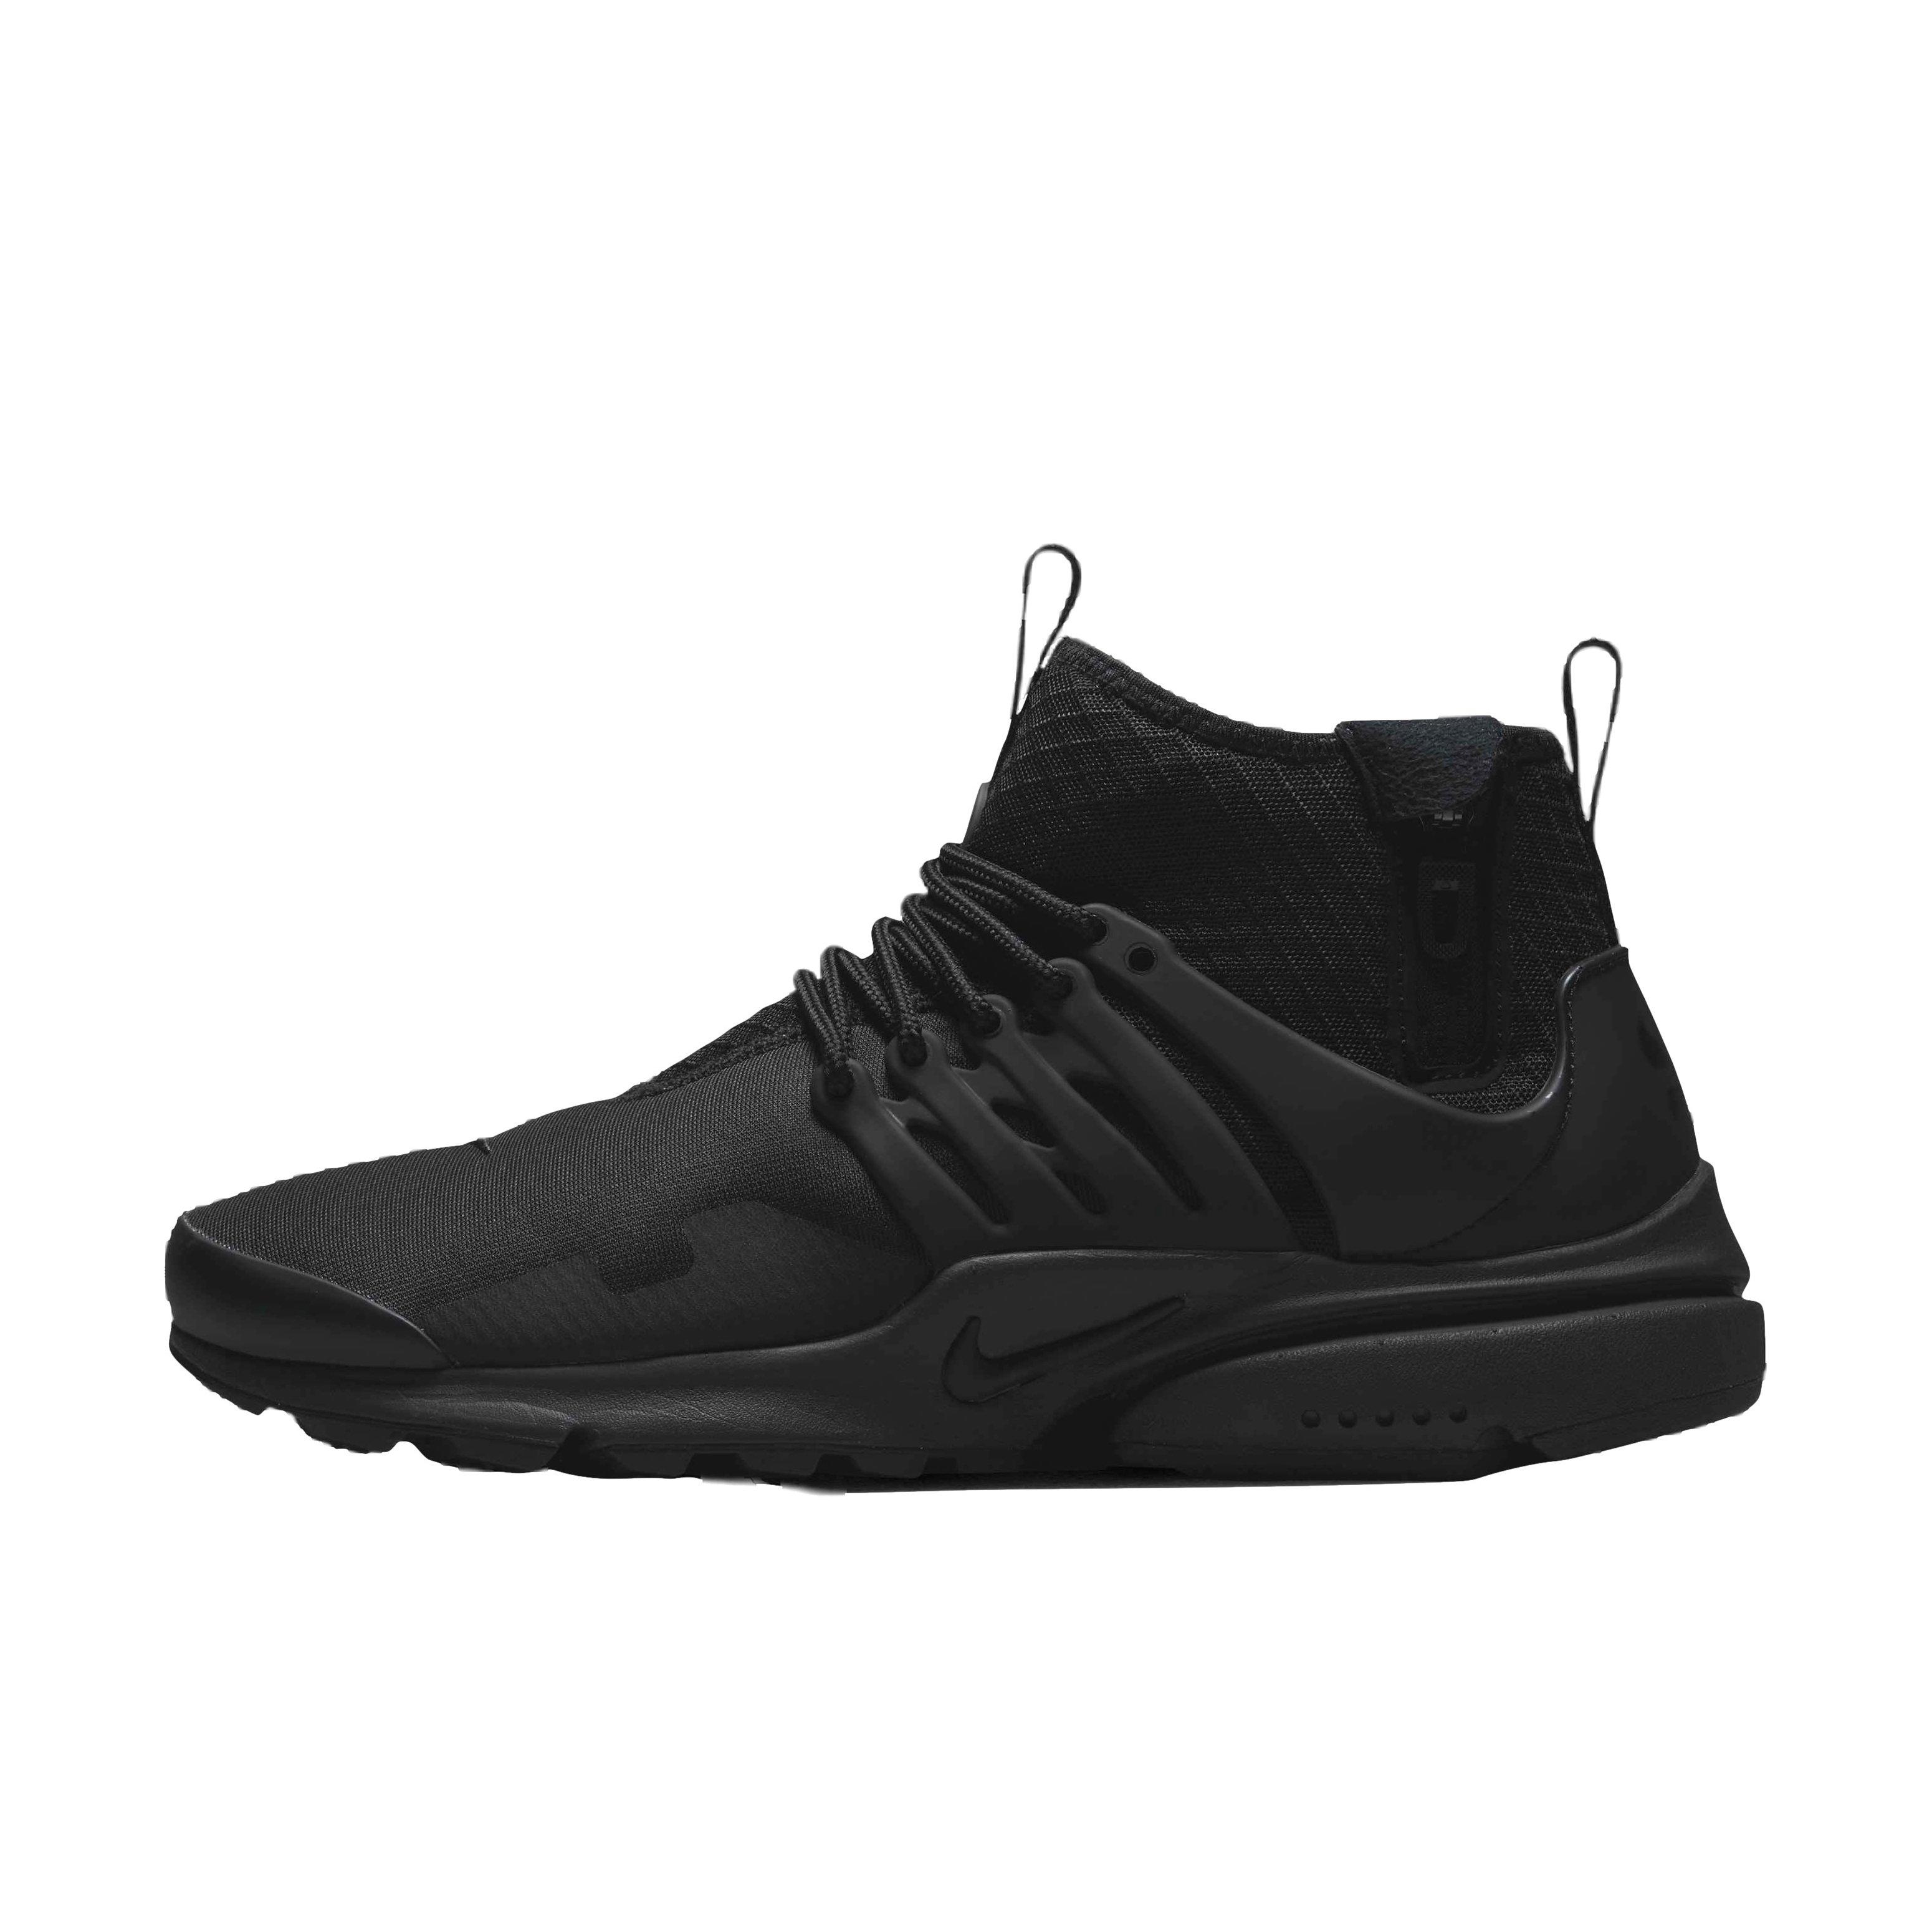 Permanecer de pié martes martillo Nike Air Presto Mid Utility "Black/Black" Men's Shoe